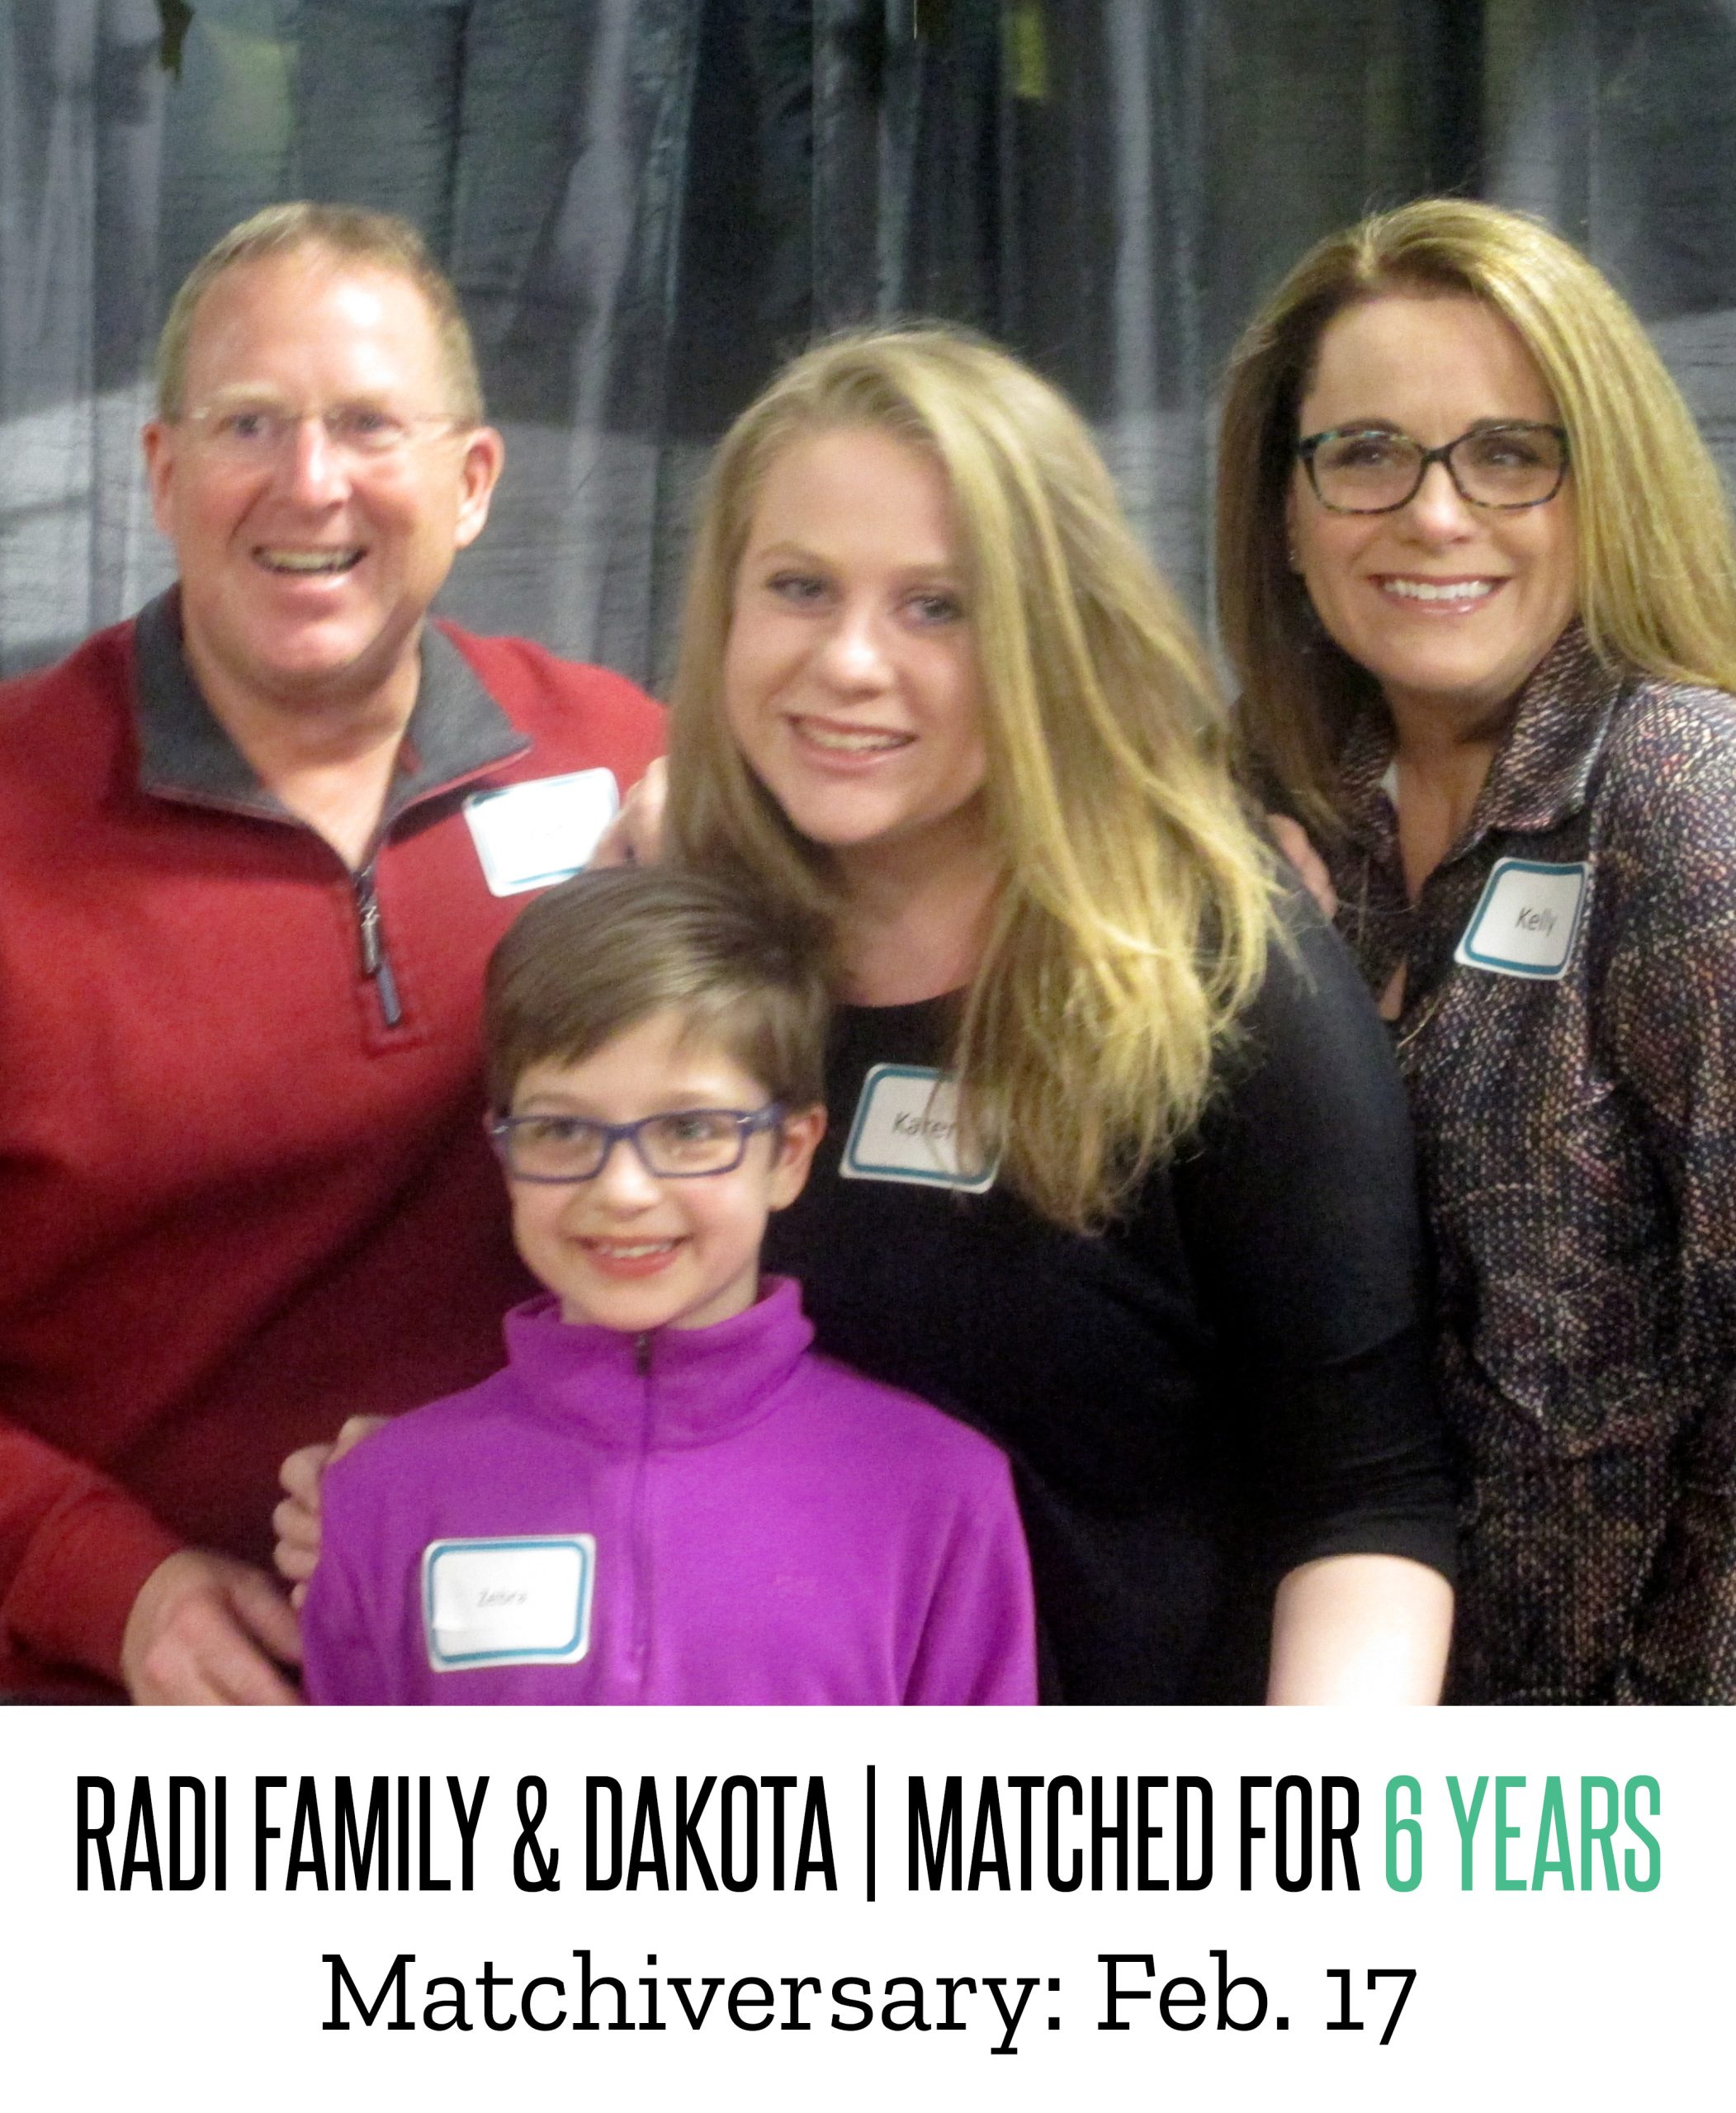 Radi Family & Dakota 7 Year Matchiversary